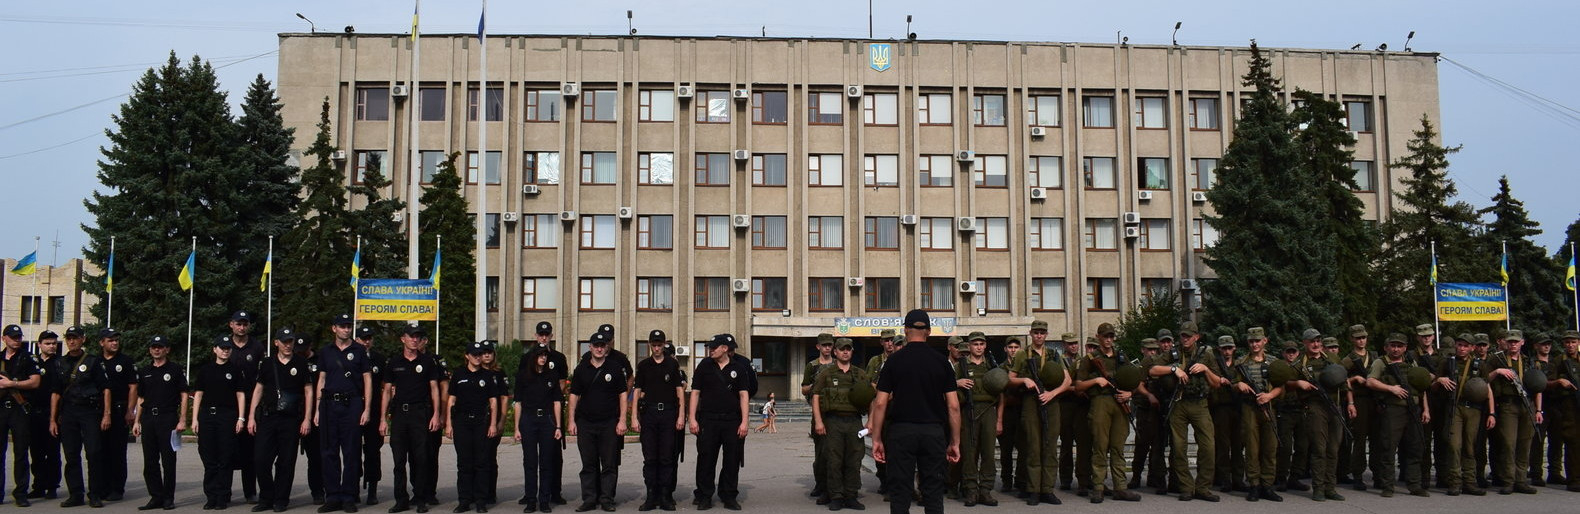 Во избежание терактов со стороны боевиков: в Славянске будет дежурить полиция на первый звонок